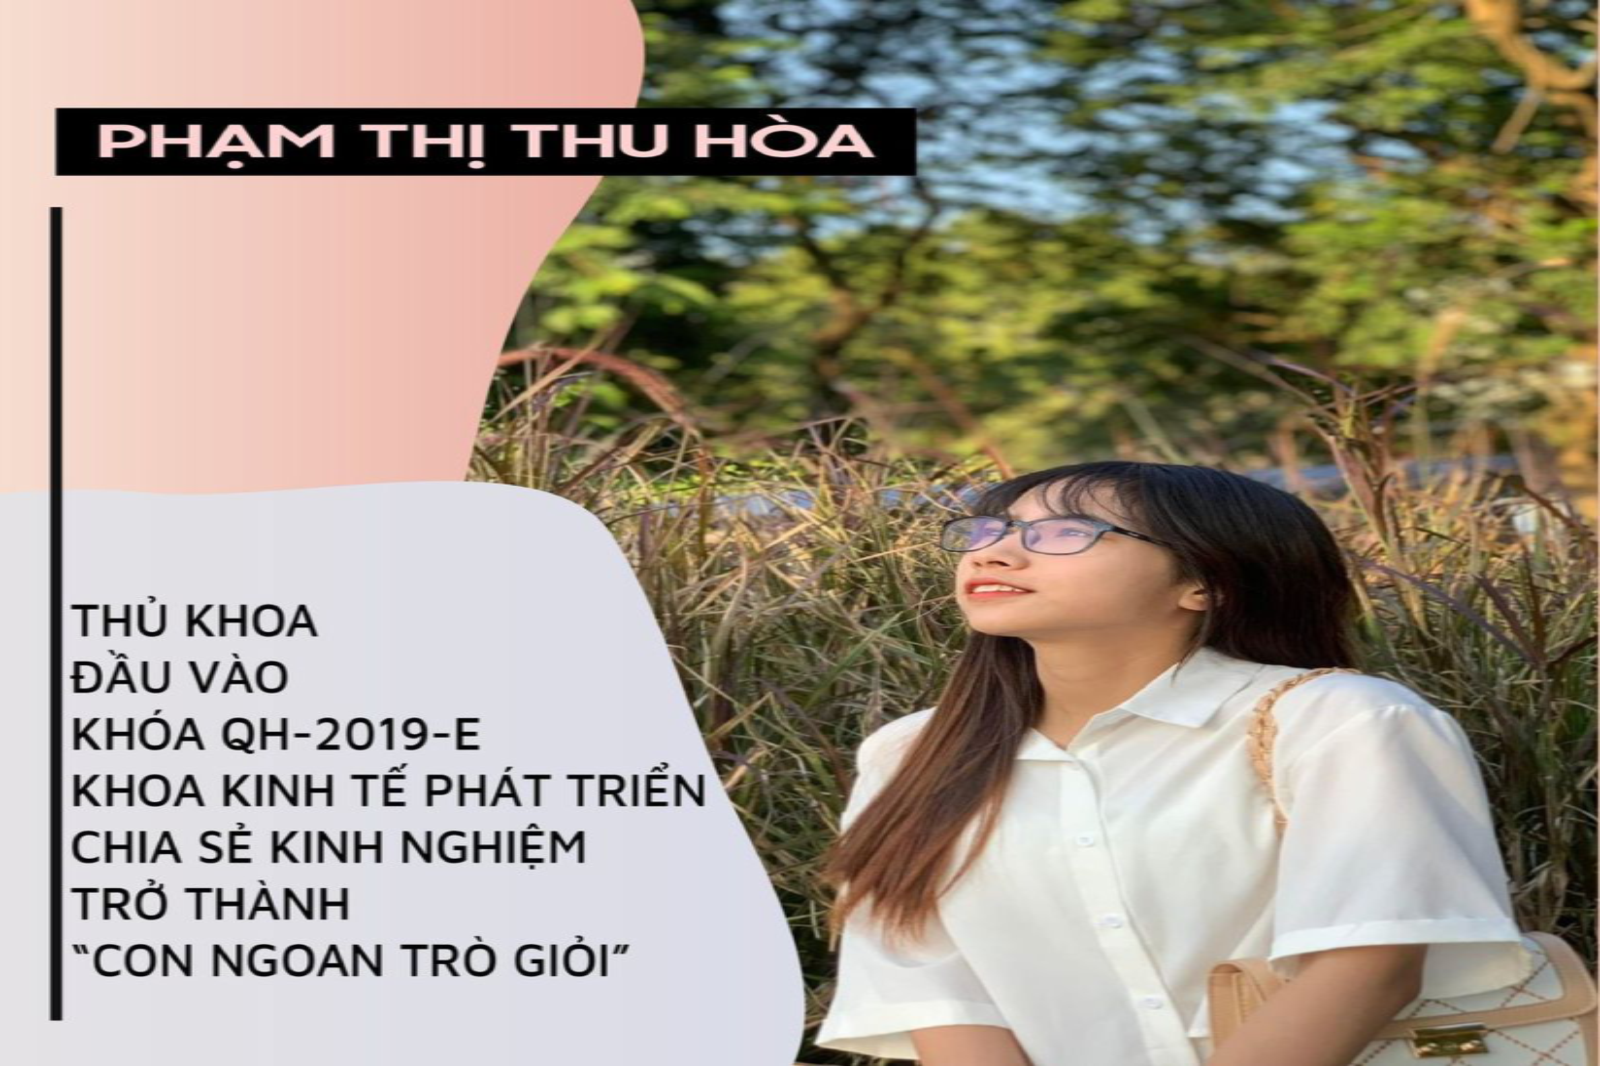 Phạm Thị Thu Hòa - Thủ Khoa đầu vào Khóa QH-2019-E ngành Kinh tế Phát triển chia sẻ kinh nghiệm trở thành " con ngoan trò giỏi"